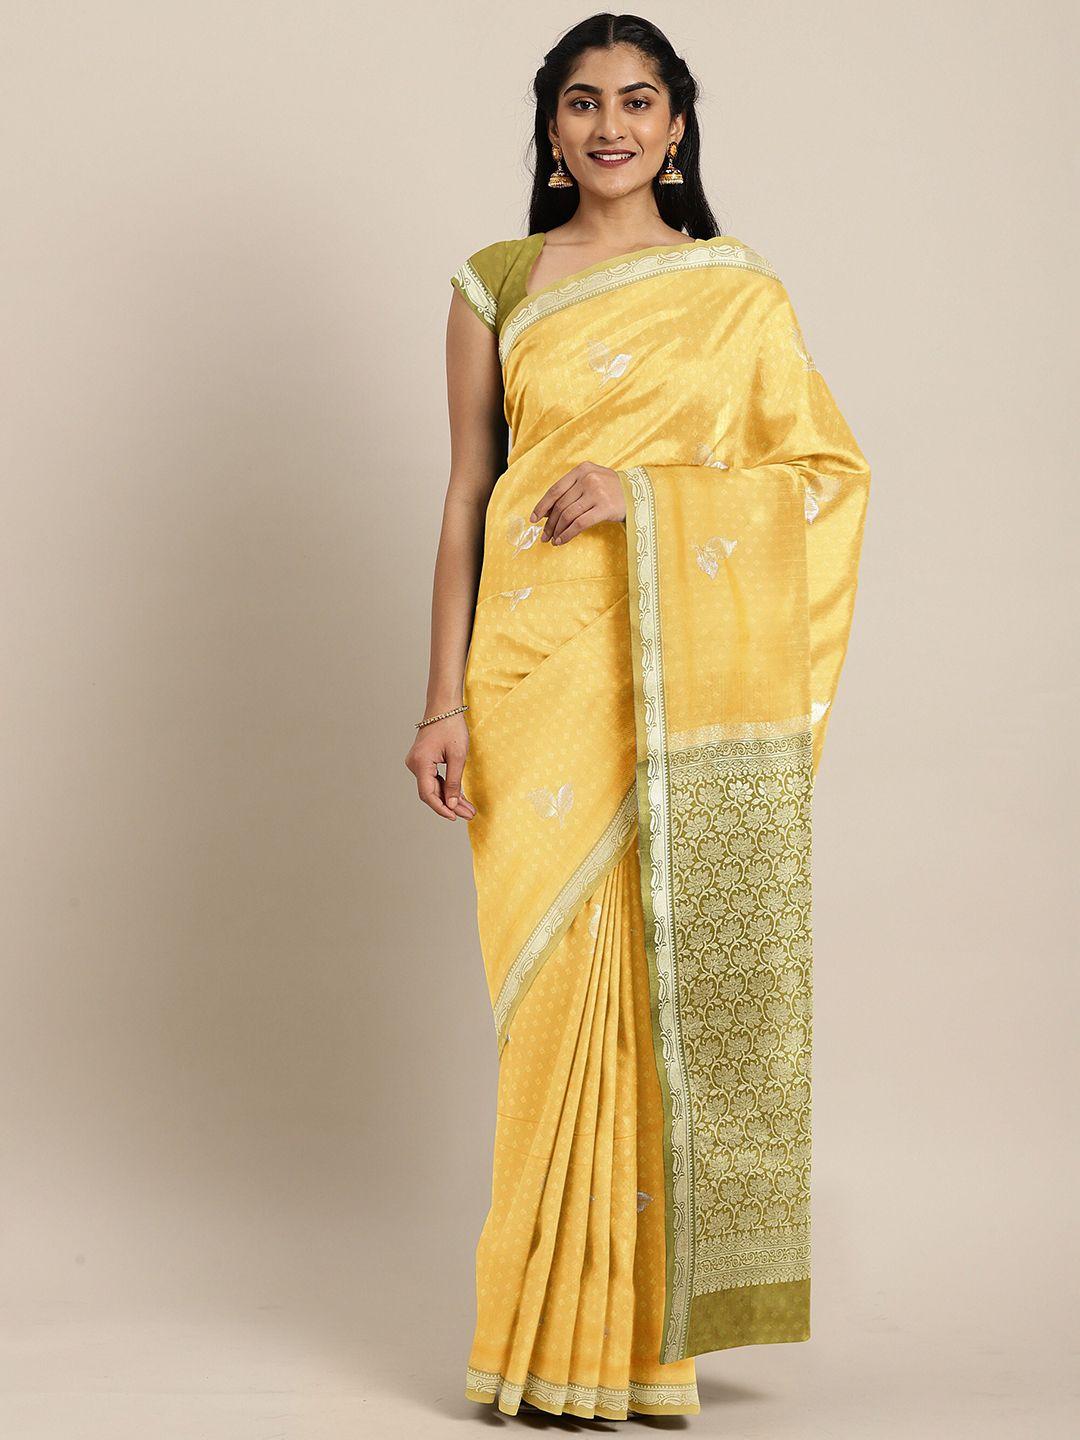 the-chennai-silks-yellow-&-green-floral-art-silk-saree